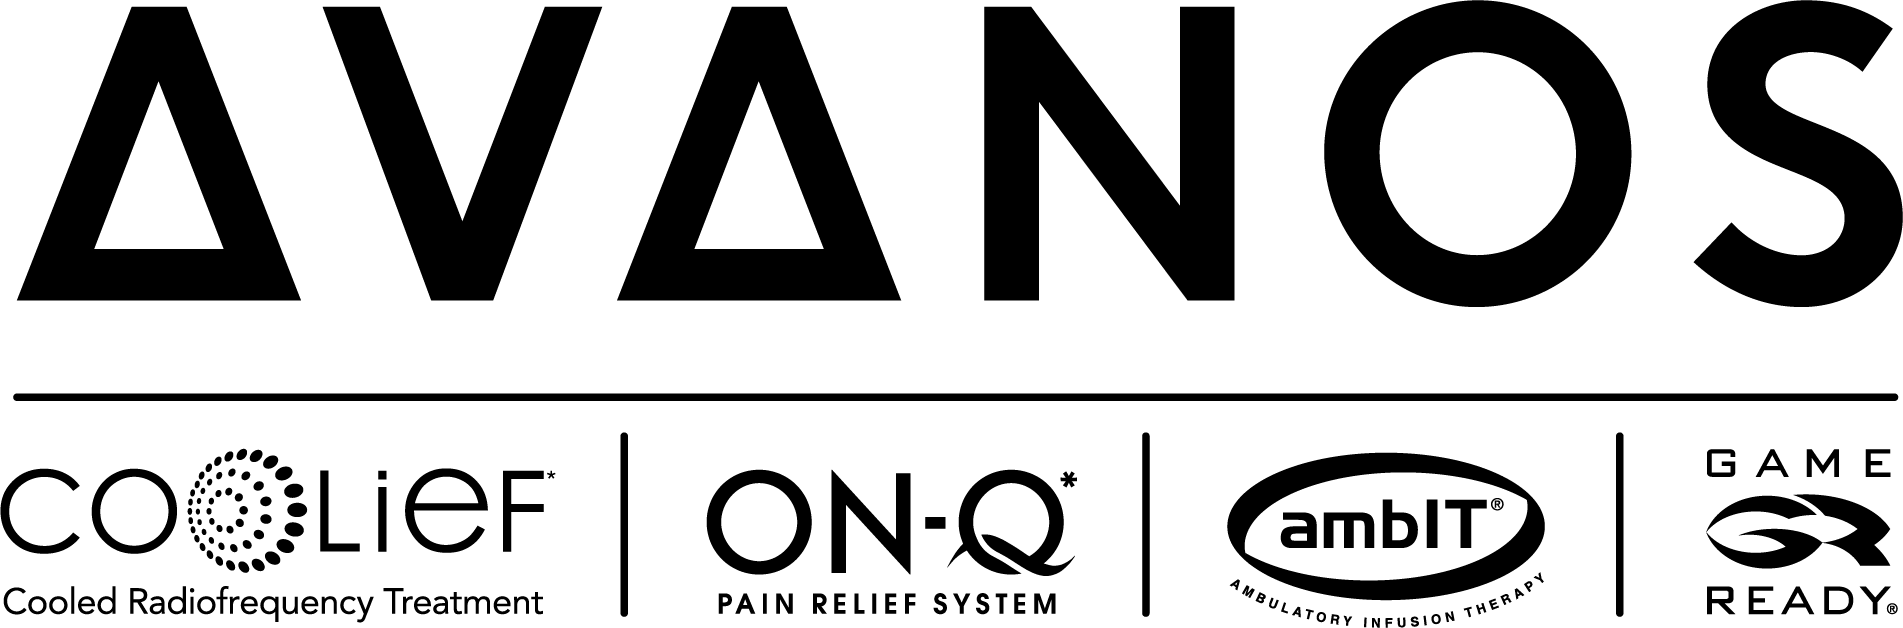 avanos logo overall